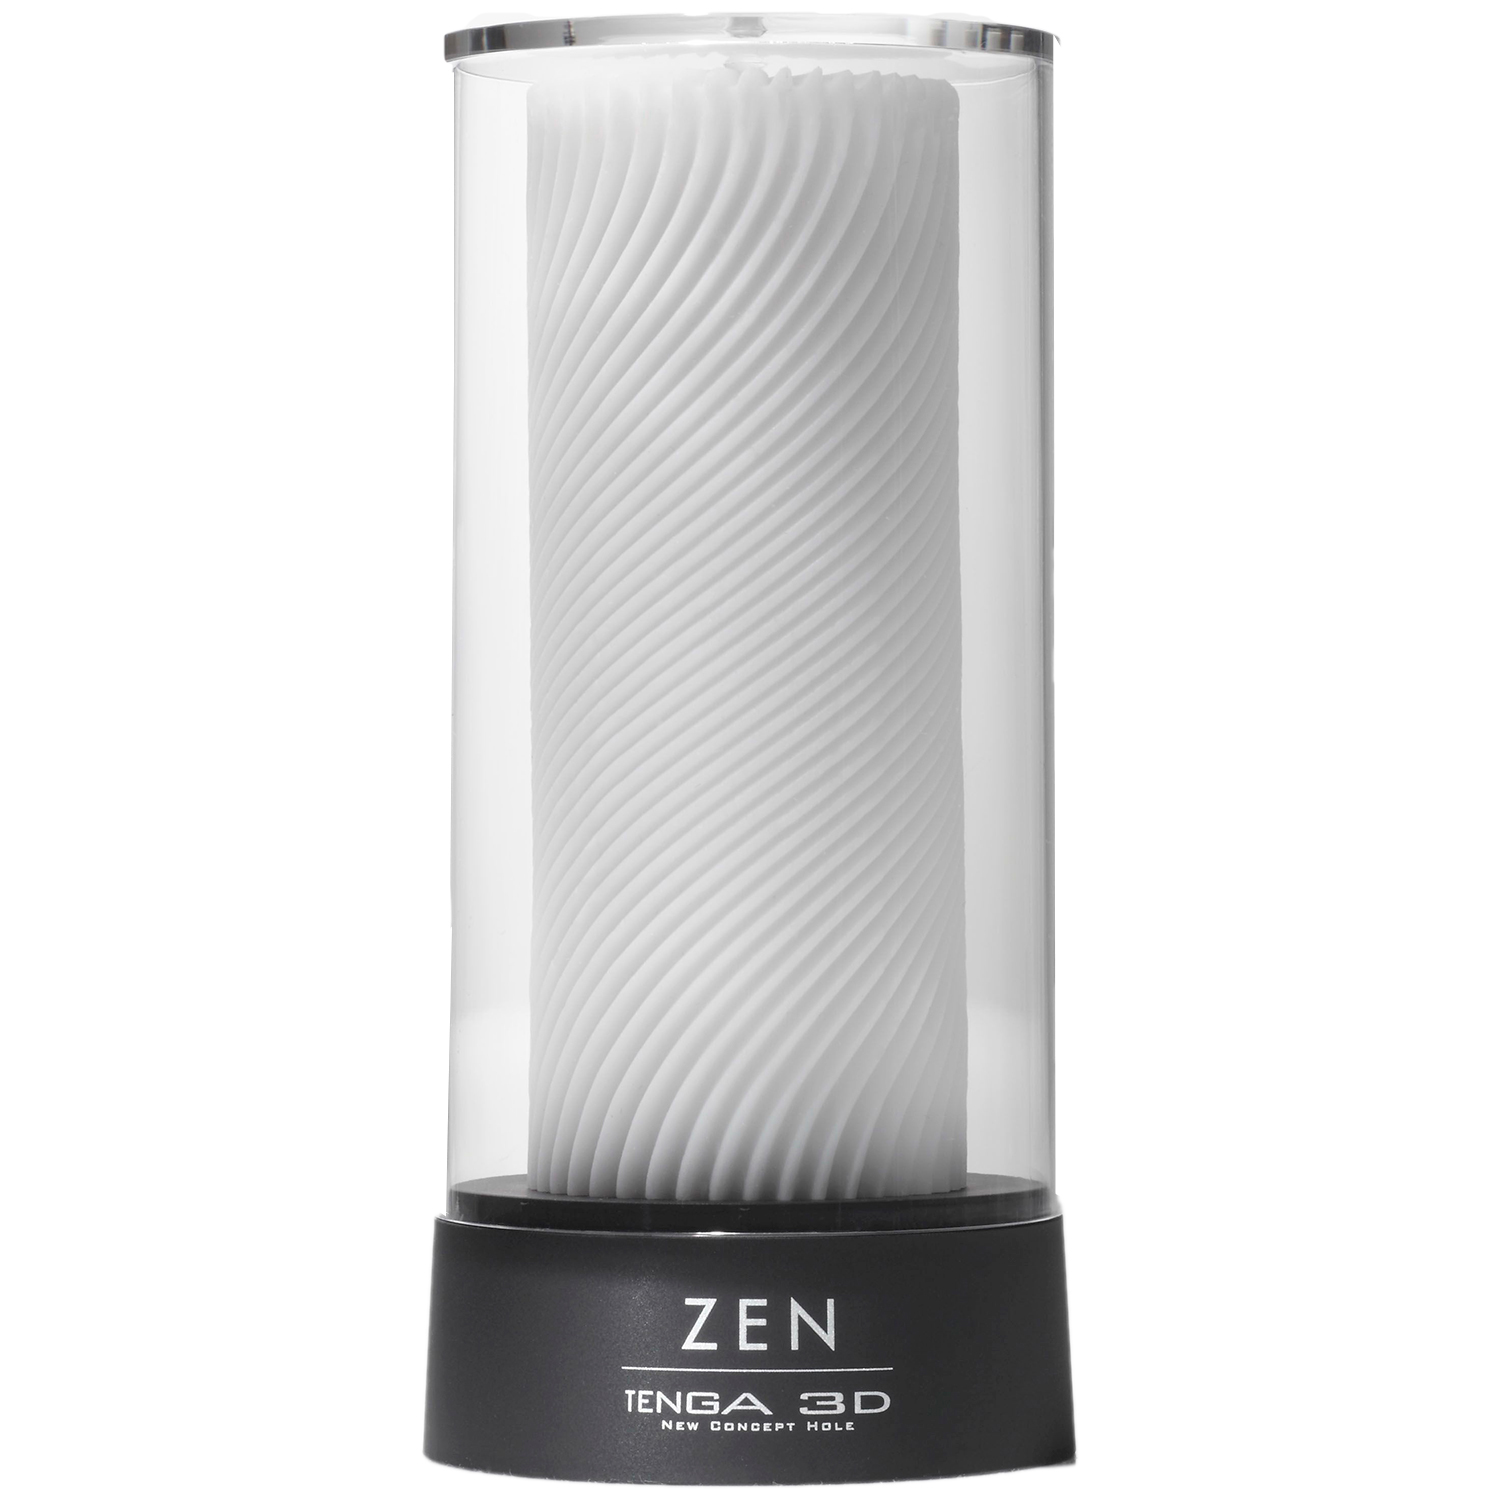 Tenga 3D Zen Onaniprodukt       - Hvid thumbnail